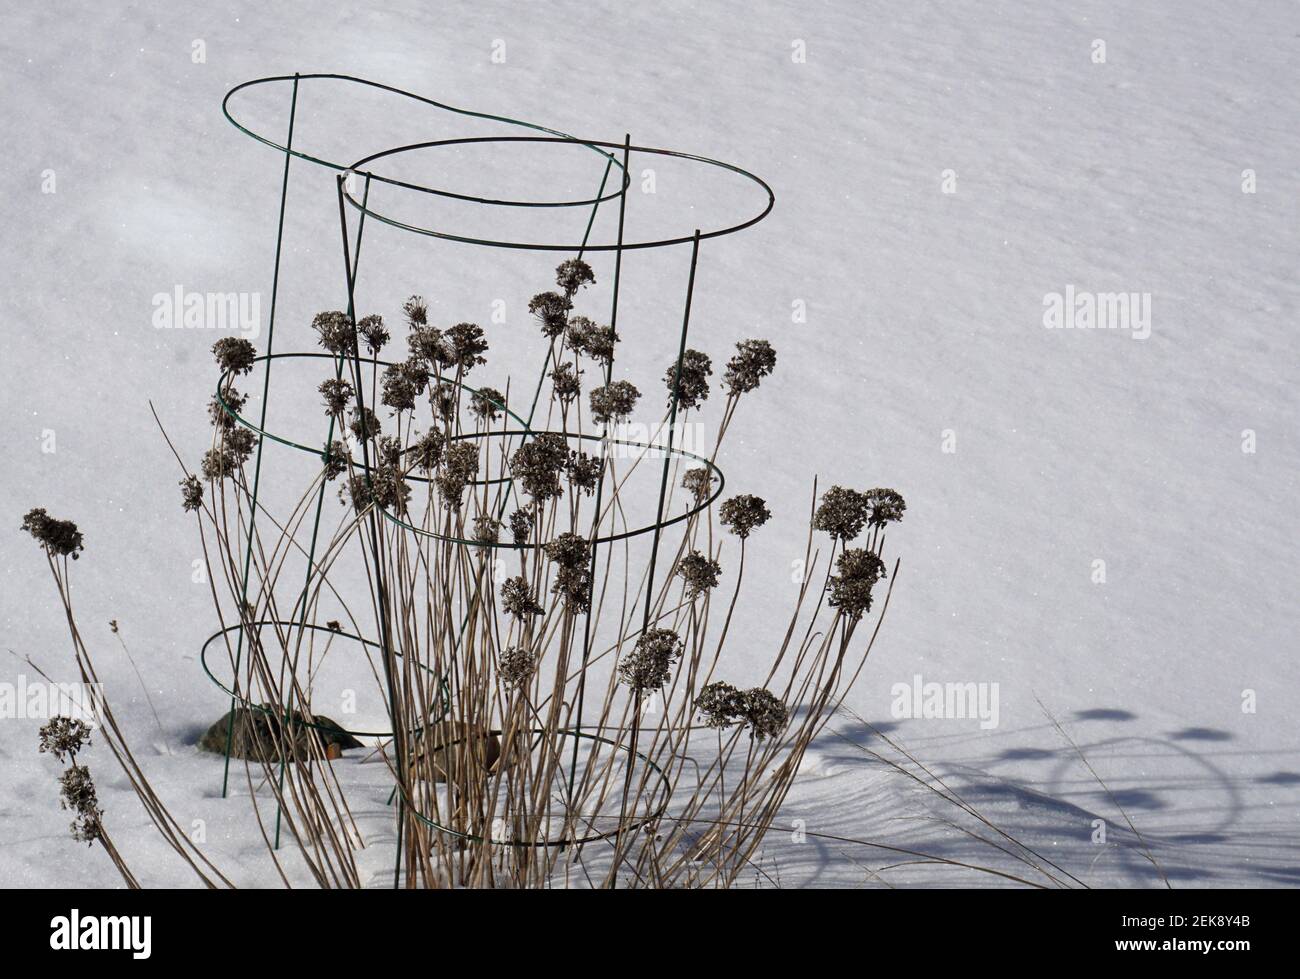 Piante di erba cipollina nella neve d'inverno Foto Stock